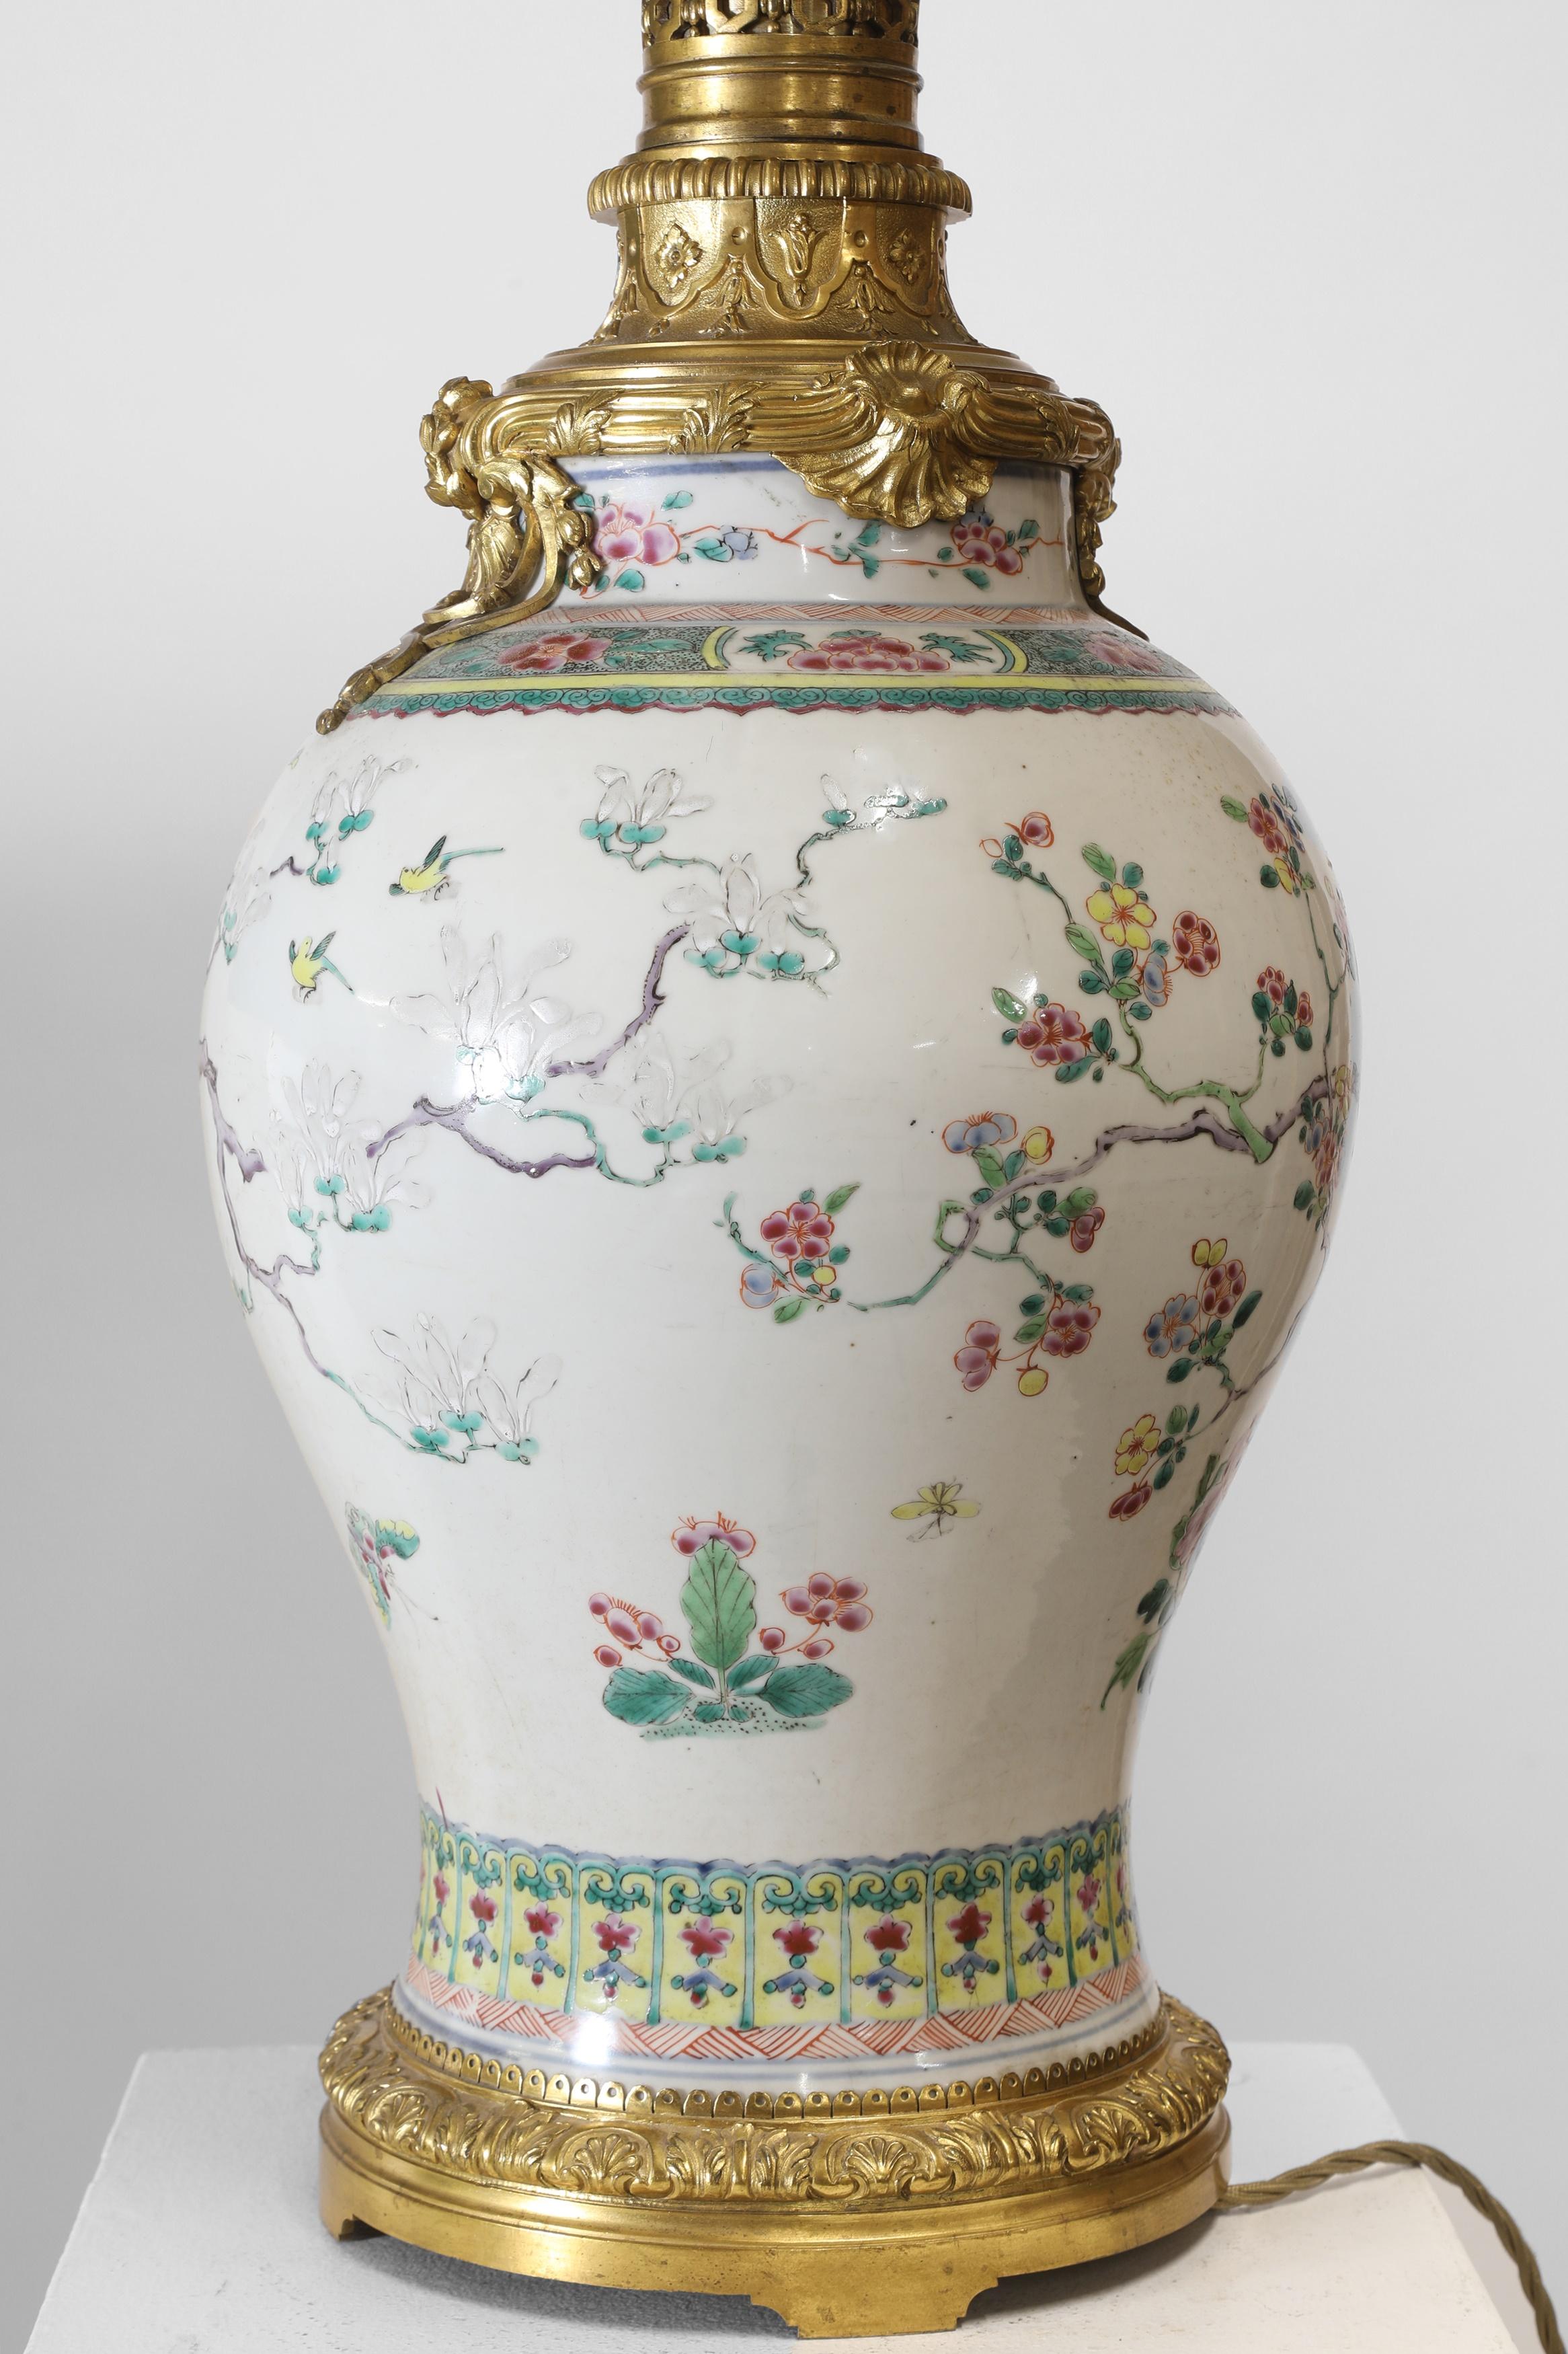 Vase en porcelaine de la famille rose,
Guangxu (1875-1908), chinois, de forme balustre, peint d'un faisan debout sur un rocher et d'un autre perché sur un magnolia en fleurs, entouré de pivoines et d'autres fleurs, aujourd'hui aménagé en lampe.